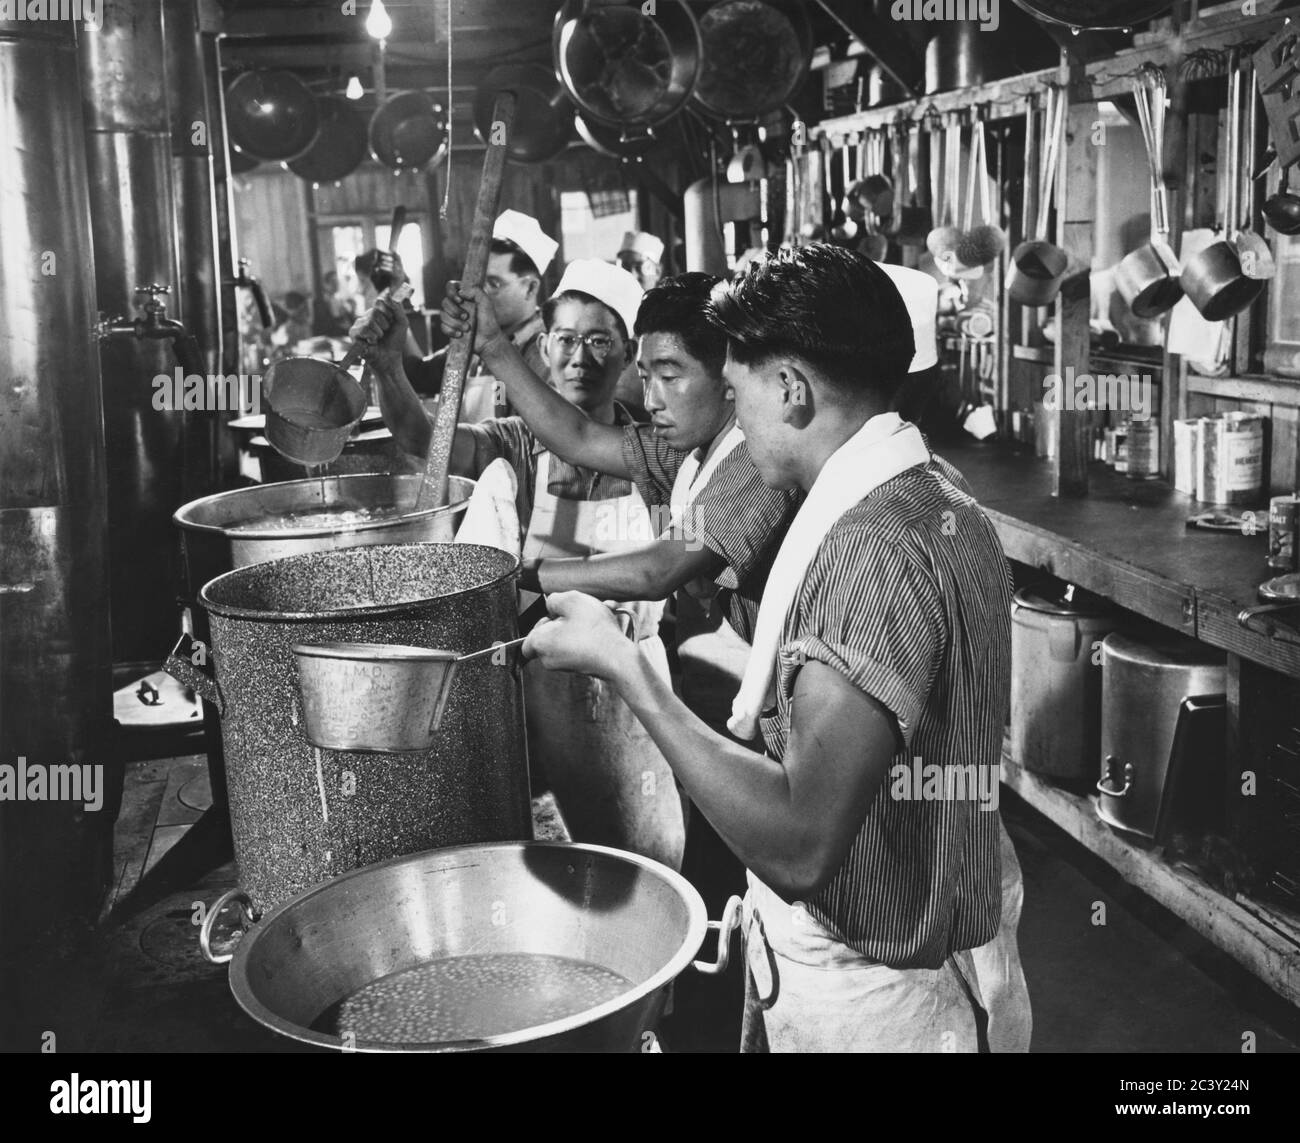 Scène de cuisine pour les évacués de l'Ancestry japonais, Assembly Center, Pomona, Californie, États-Unis, U.S. Army signal corps, 1942 Banque D'Images